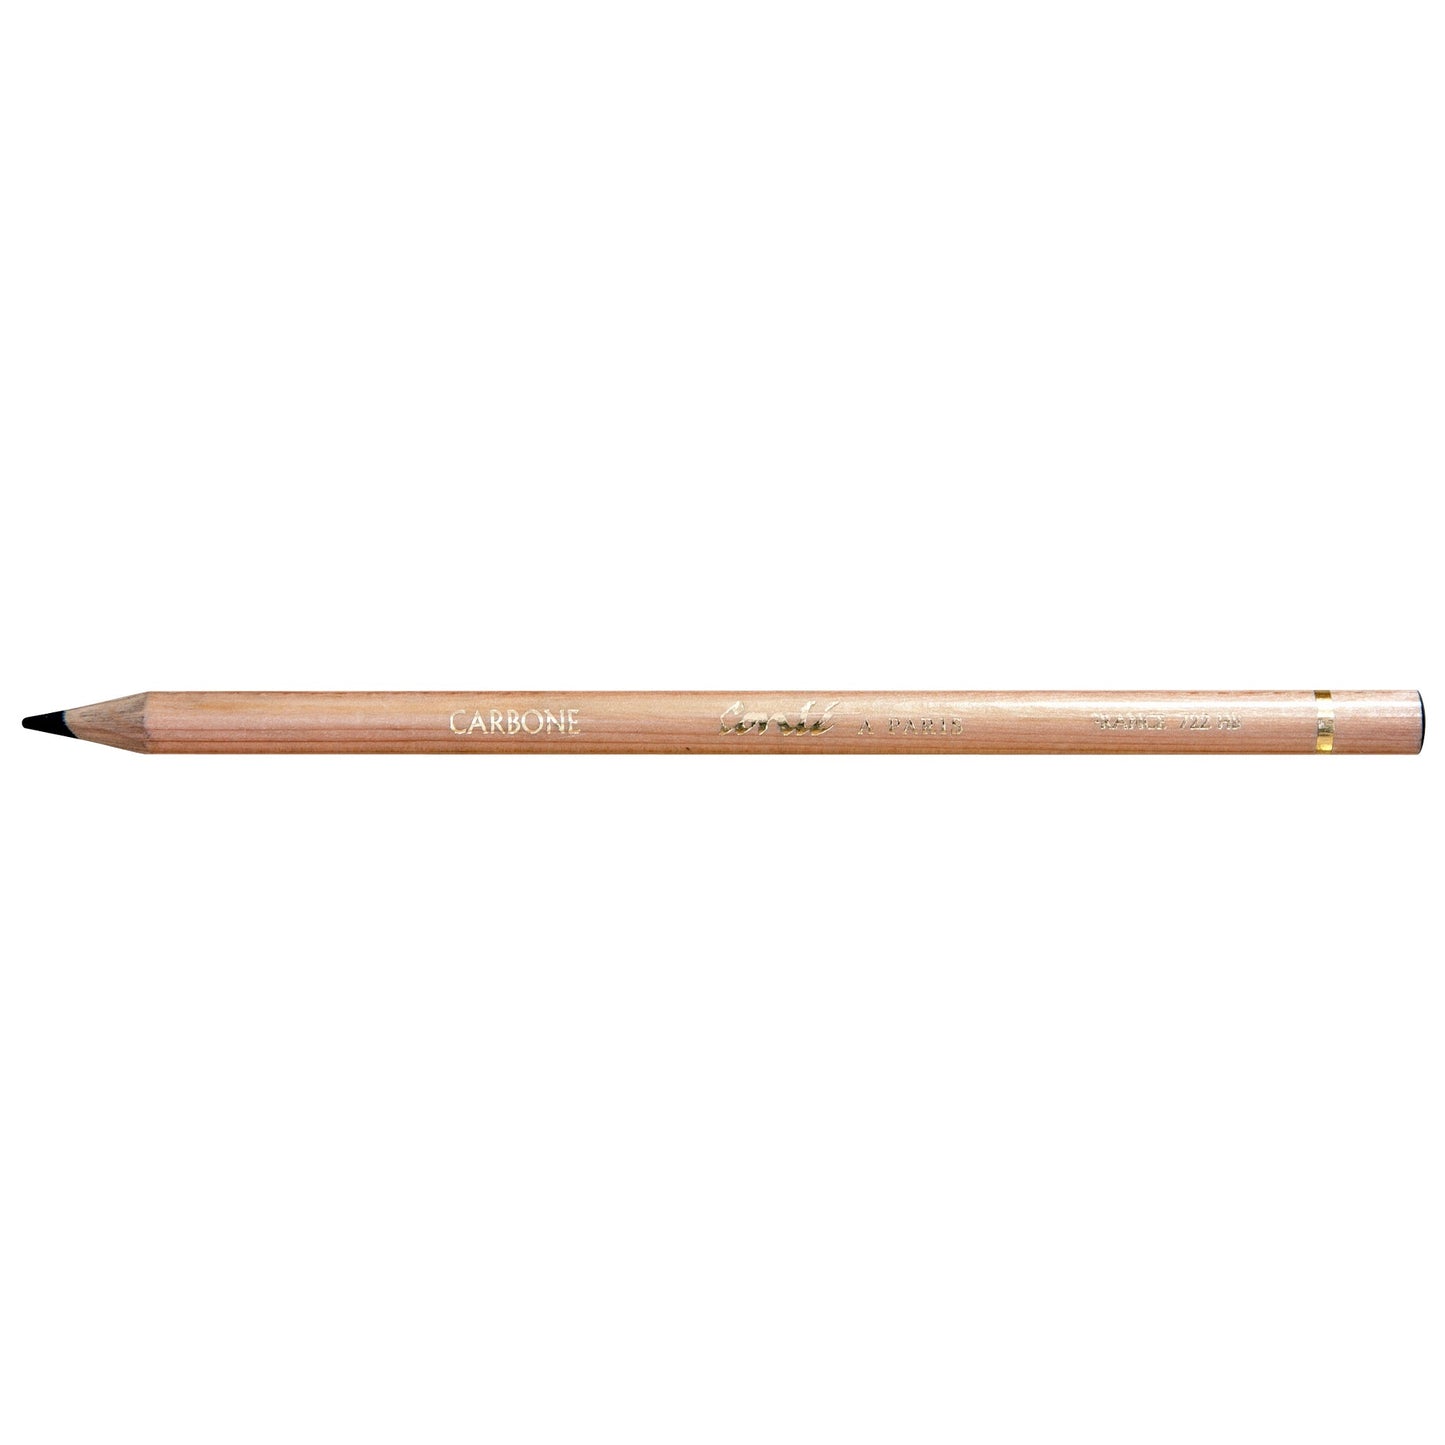 Conte Sketching Pencil Carbon 722 HB - theartshop.com.au